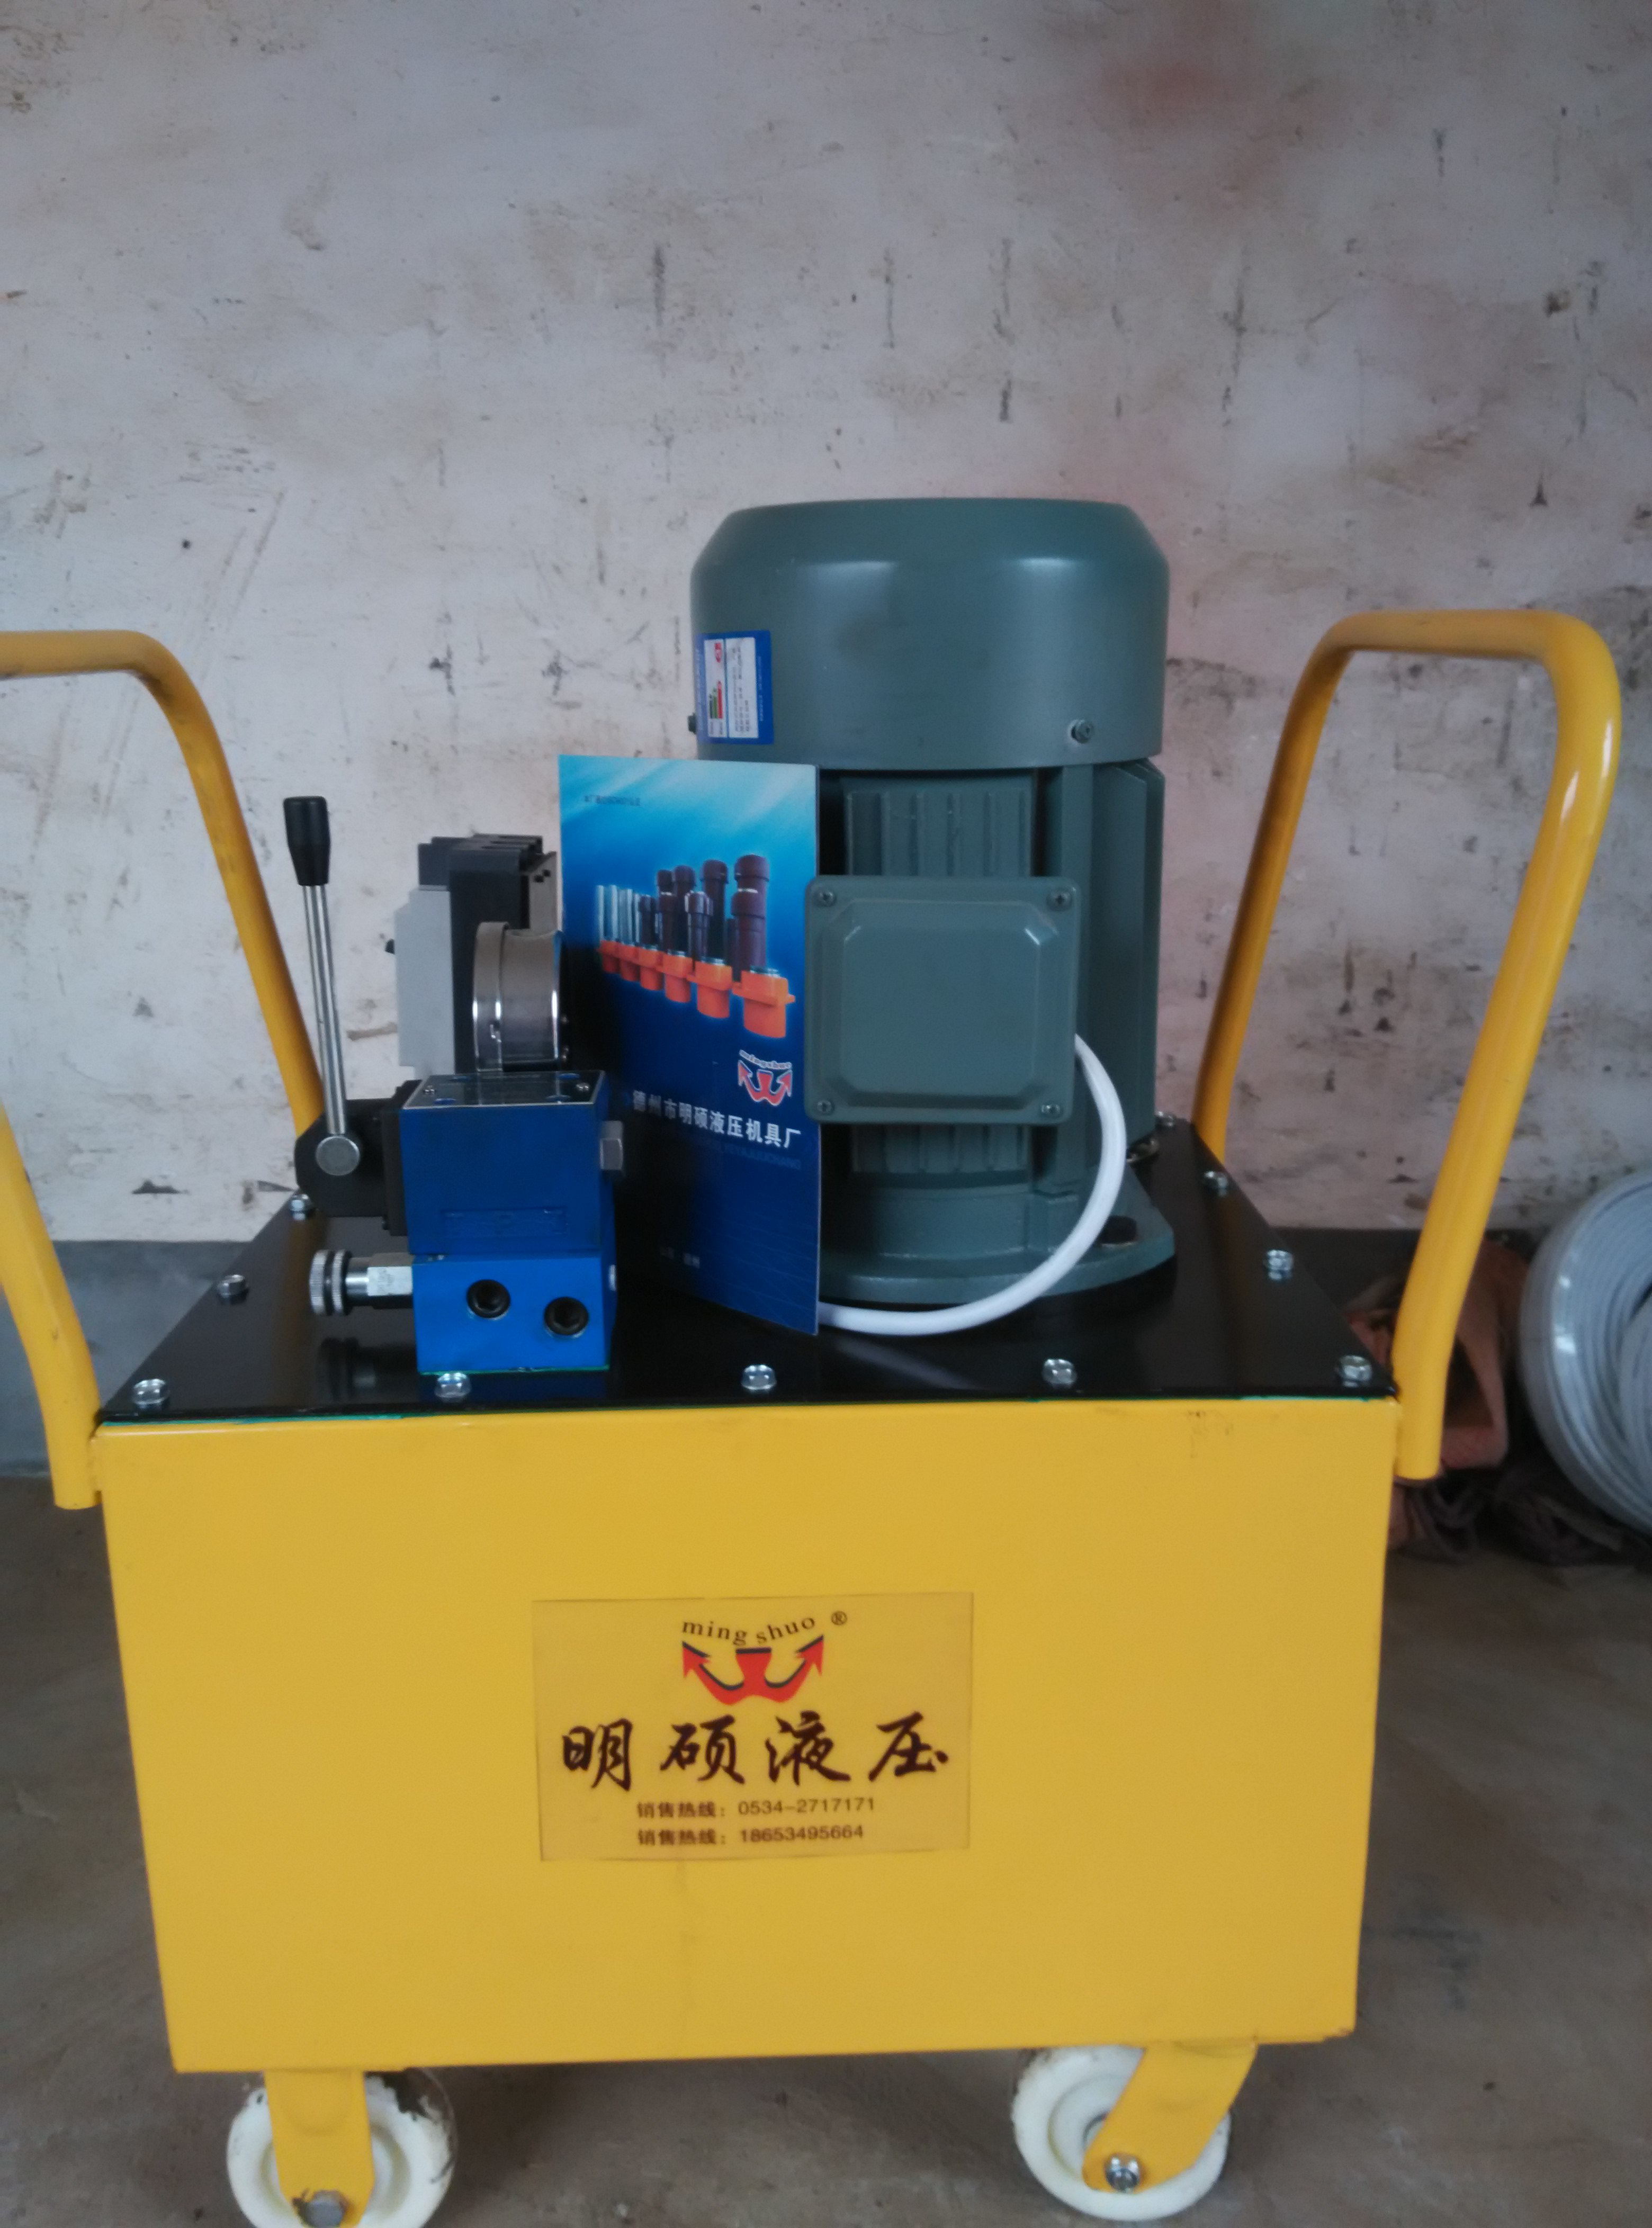 山东山东明硕液压机具厂定做多种型号液压泵电动油泵液压泵站液压系